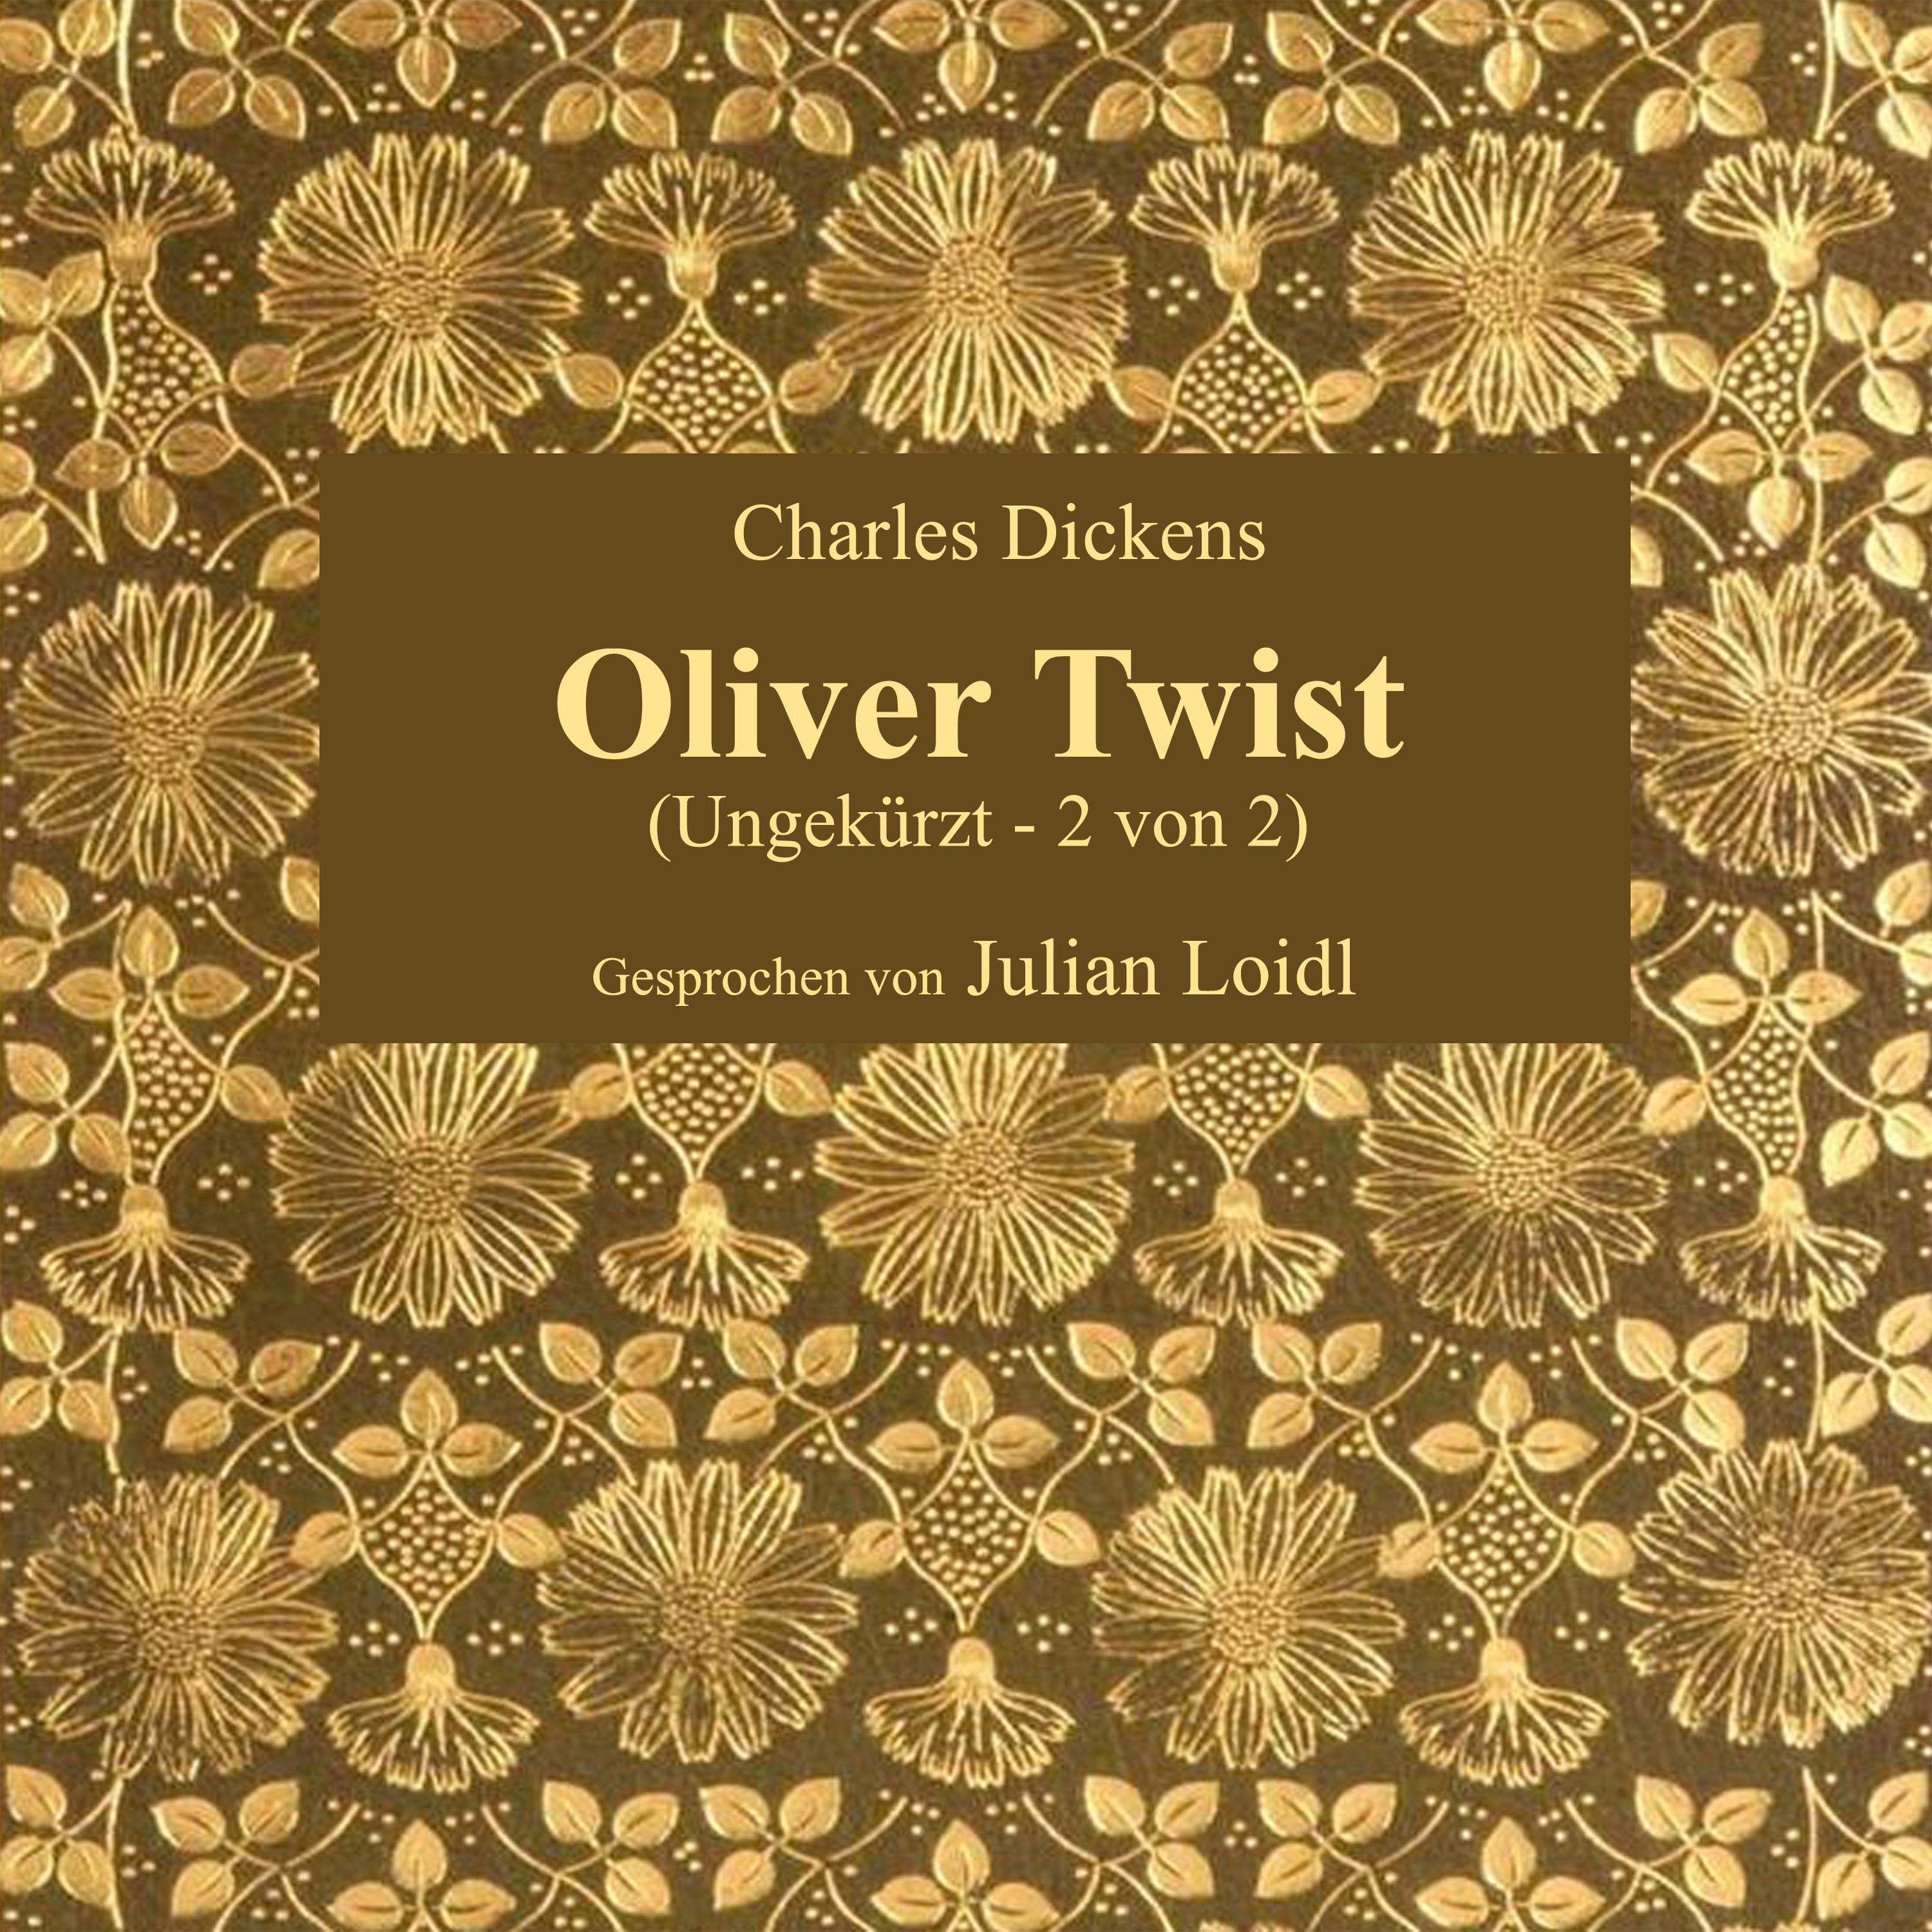 Kapitel 51: Oliver Twist (Teil 13)